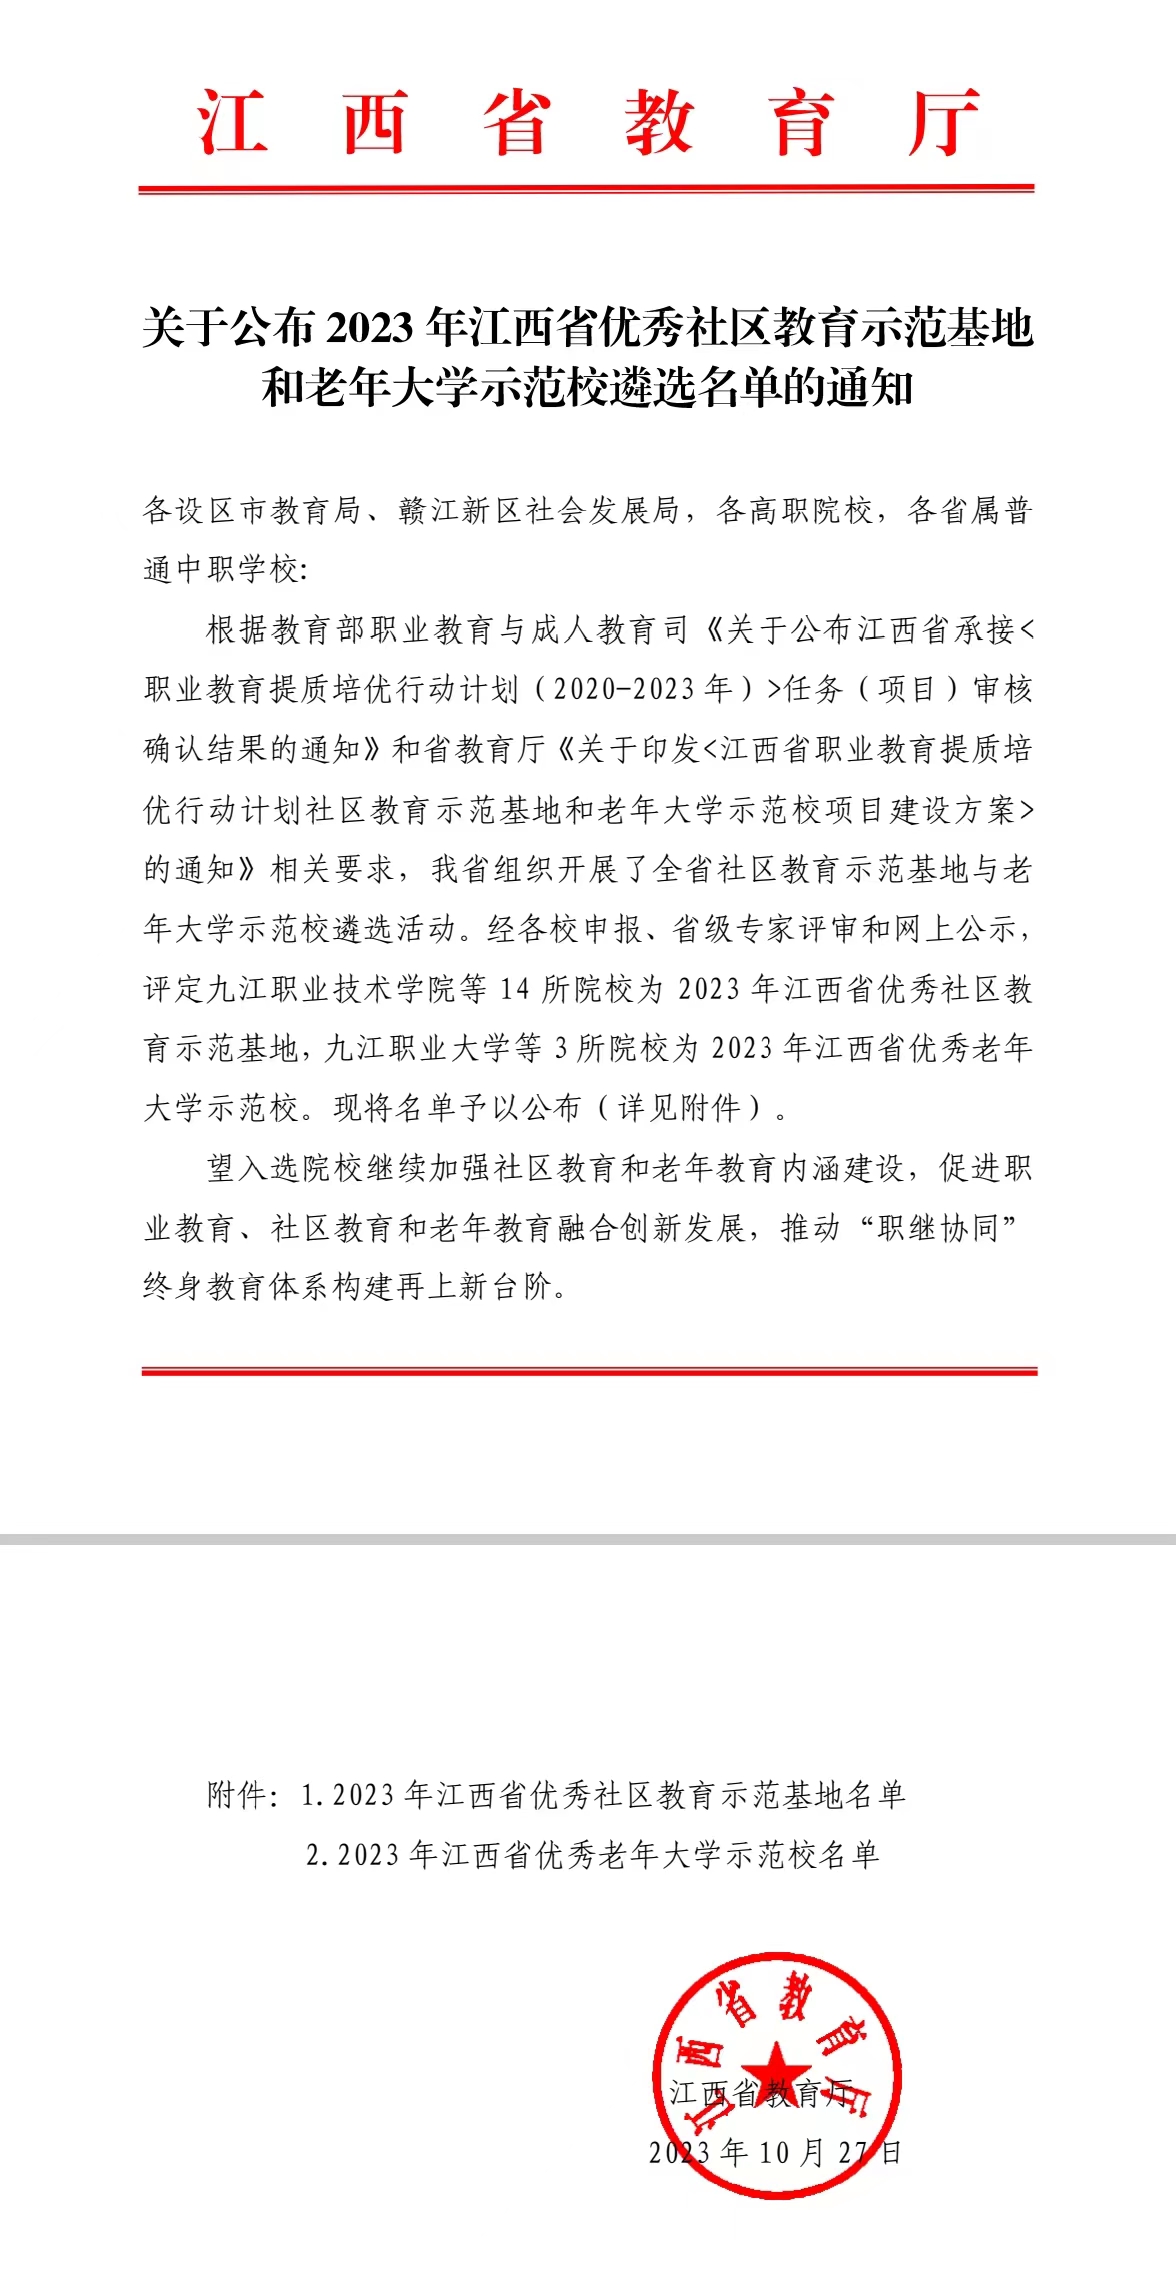 喜报丨我校被评定为2023 年江西省优秀社区教育示范基地